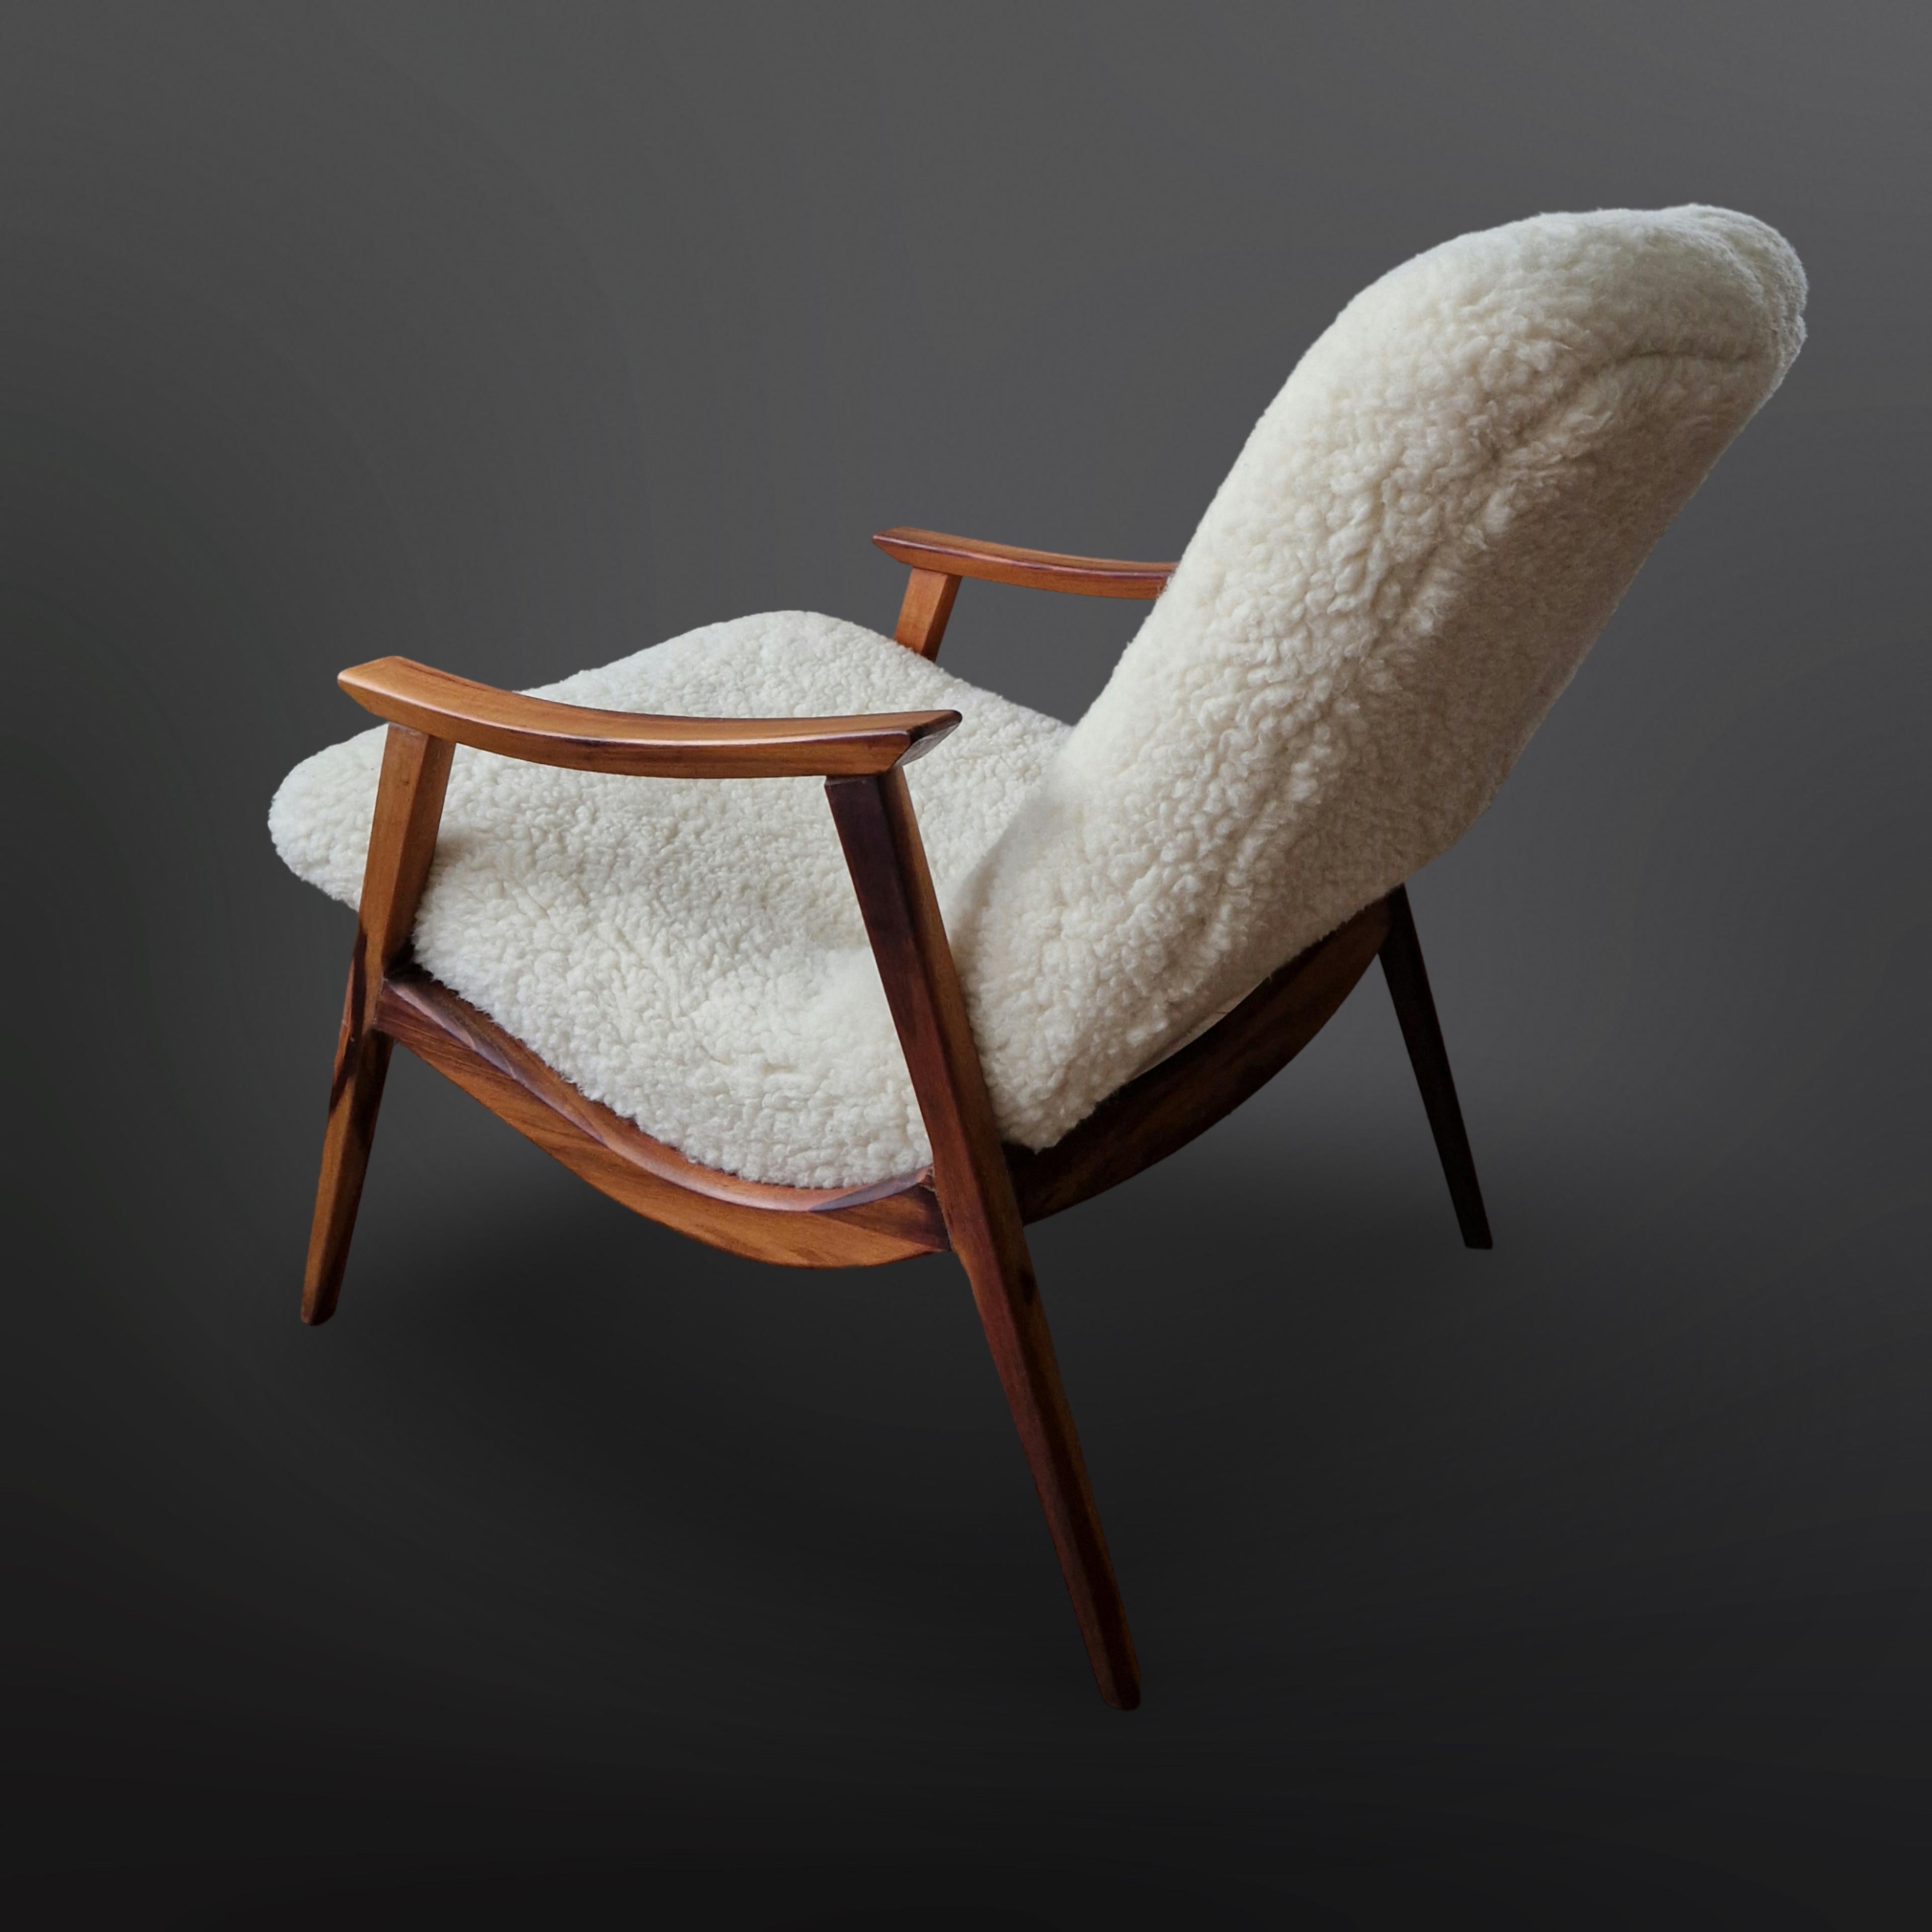 Sessel aus Palisanderholz von Gelli, Brasilien 1950er Jahre (Moderne der Mitte des Jahrhunderts)